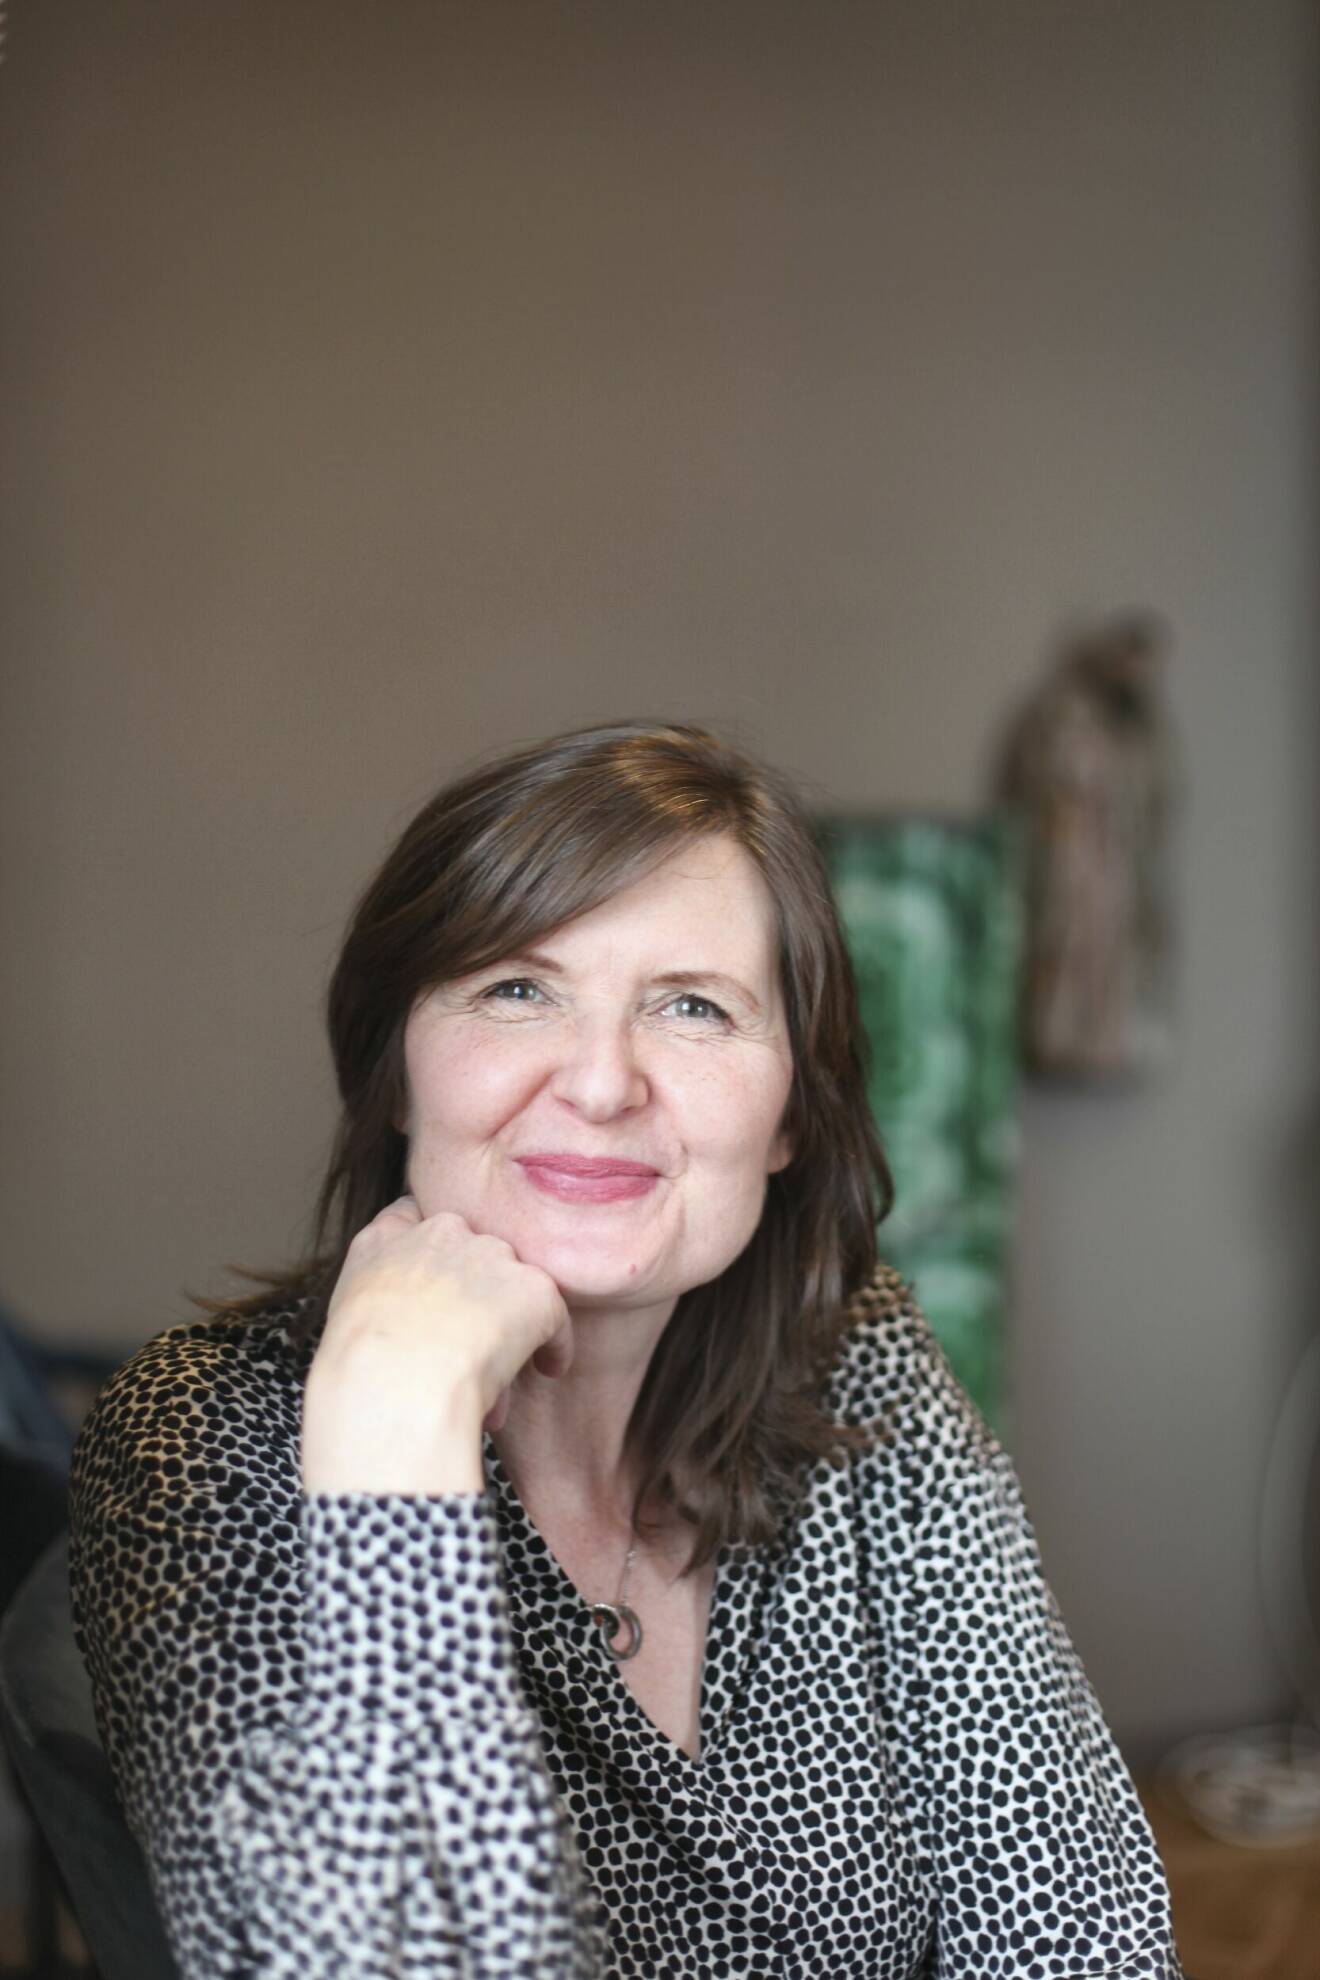 Författaren Nina van den Brink, lutar huvudet mot handen och ler in i kameran.